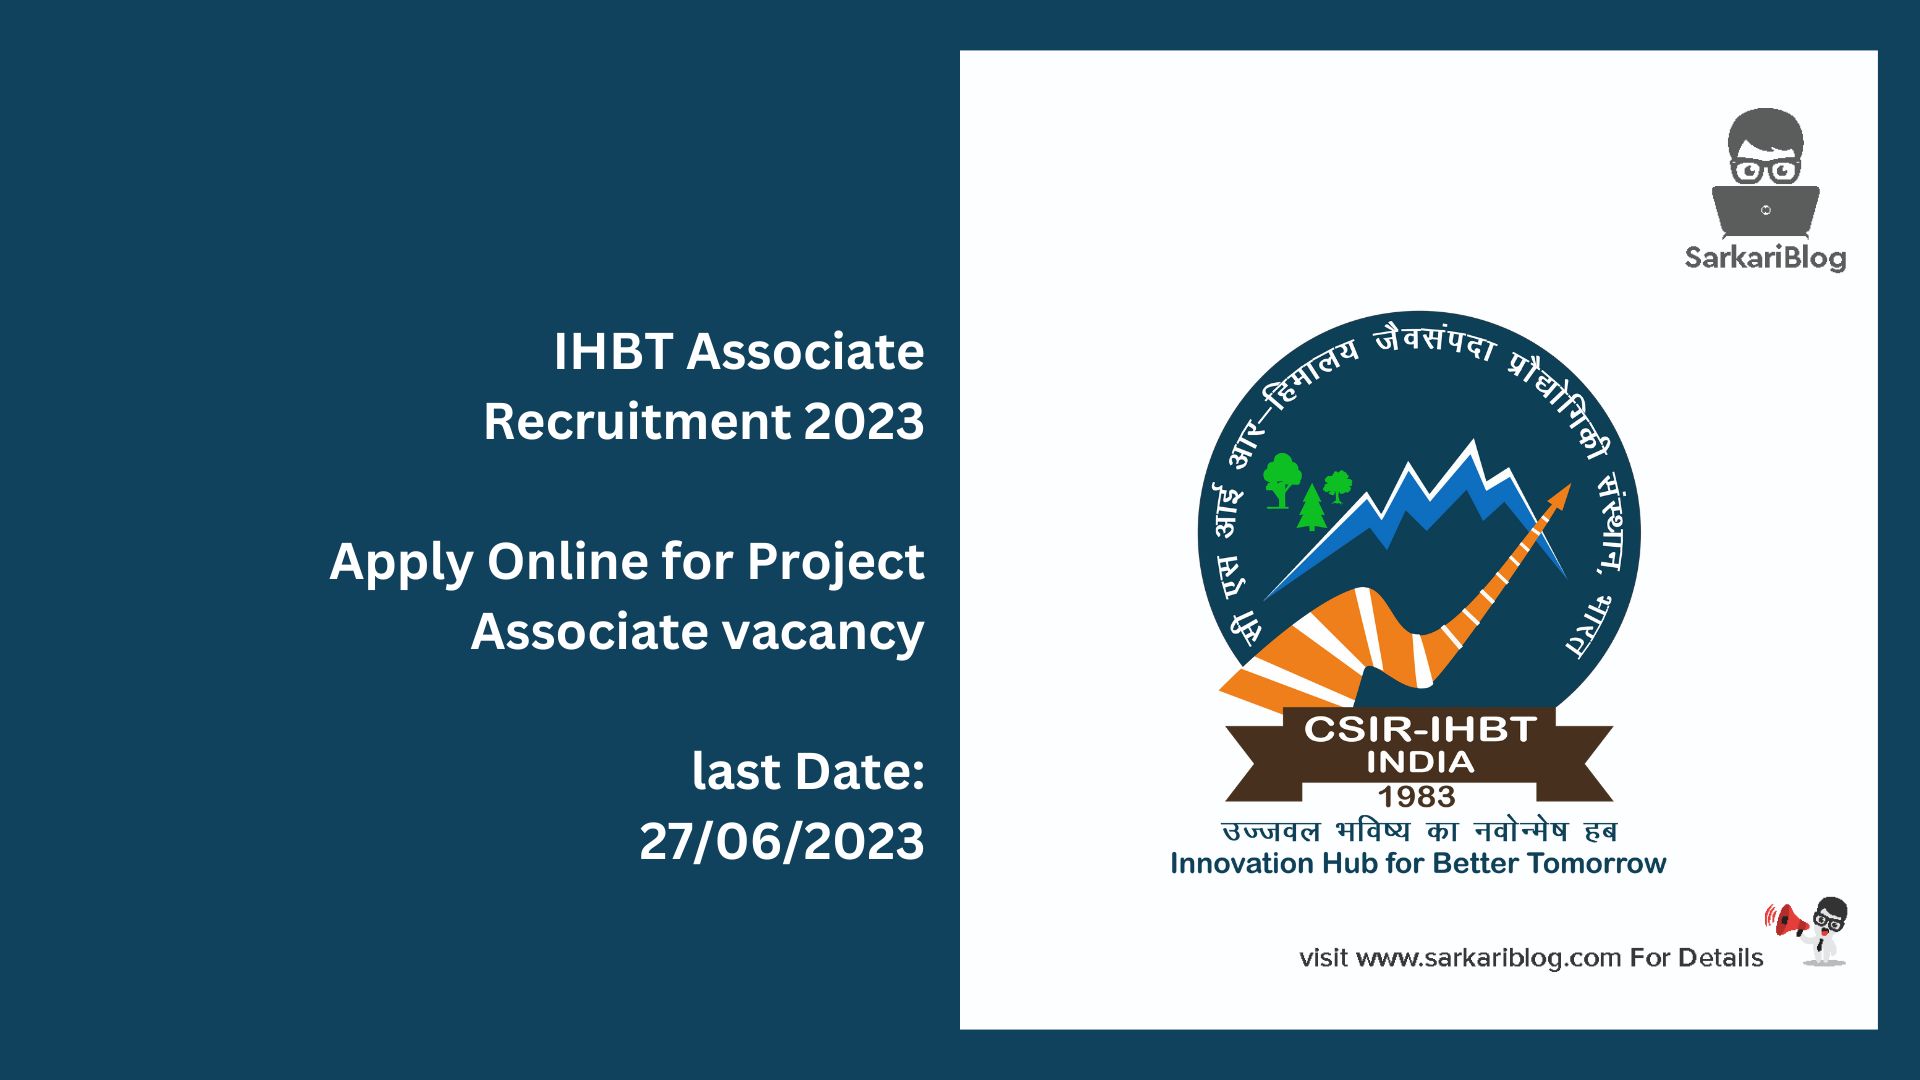 IHBT Associate Recruitment 2023